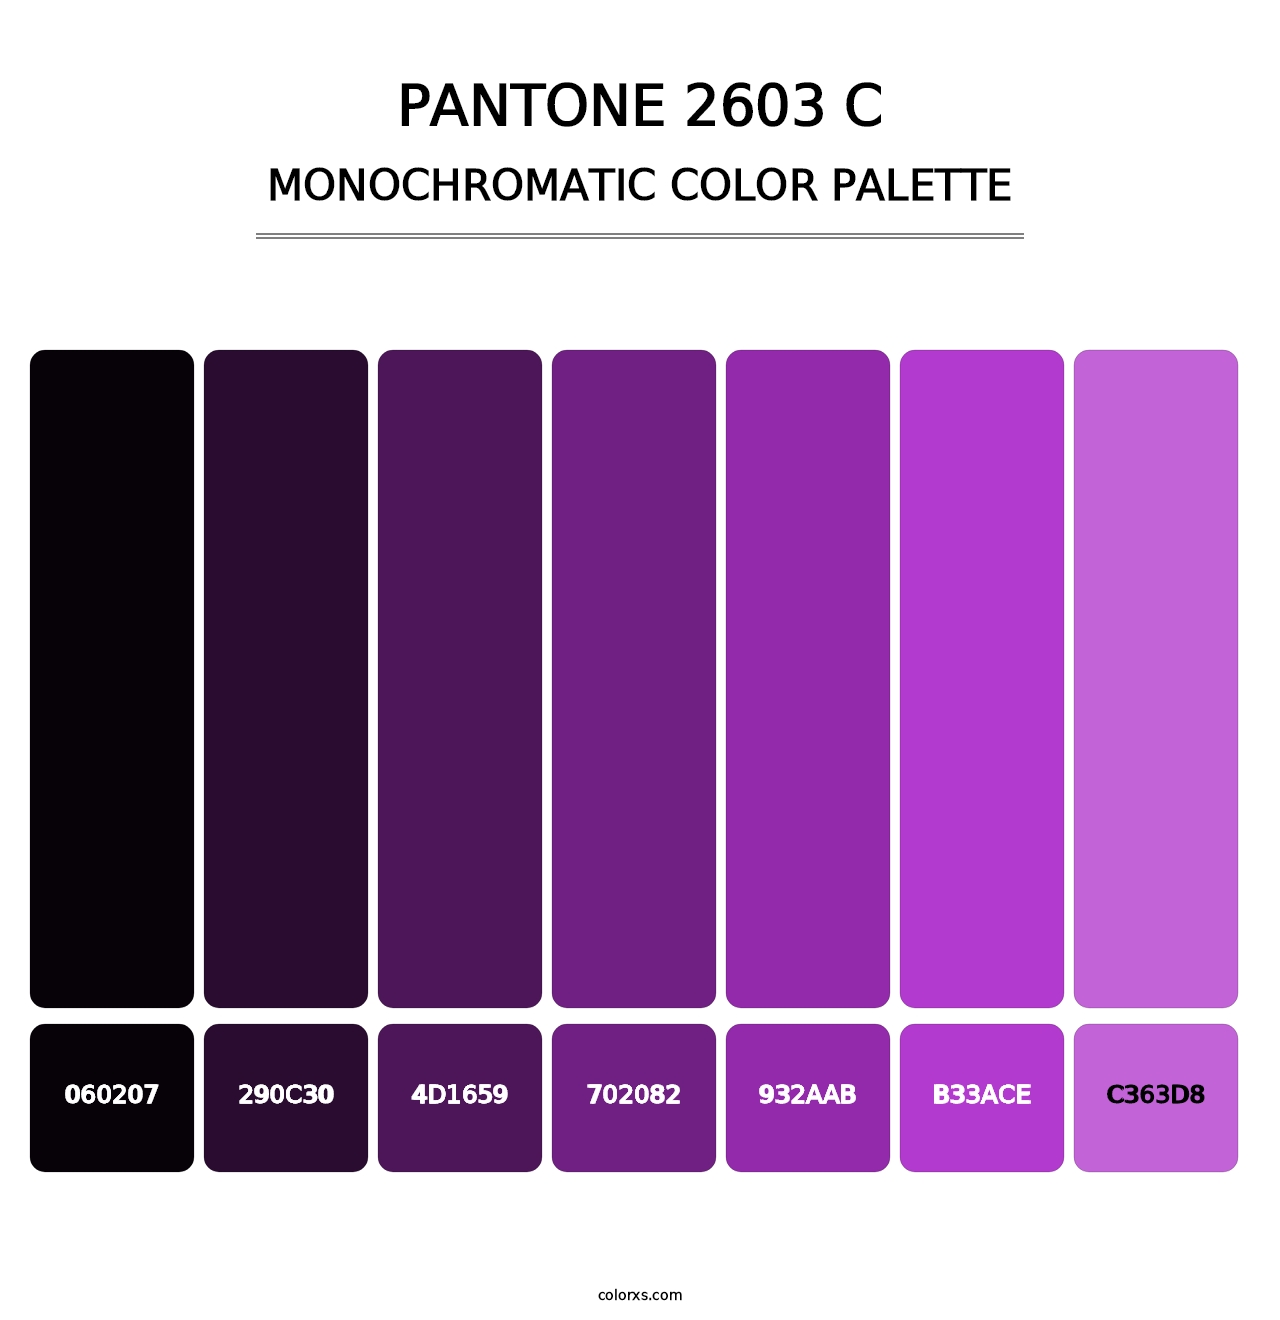 PANTONE 2603 C - Monochromatic Color Palette